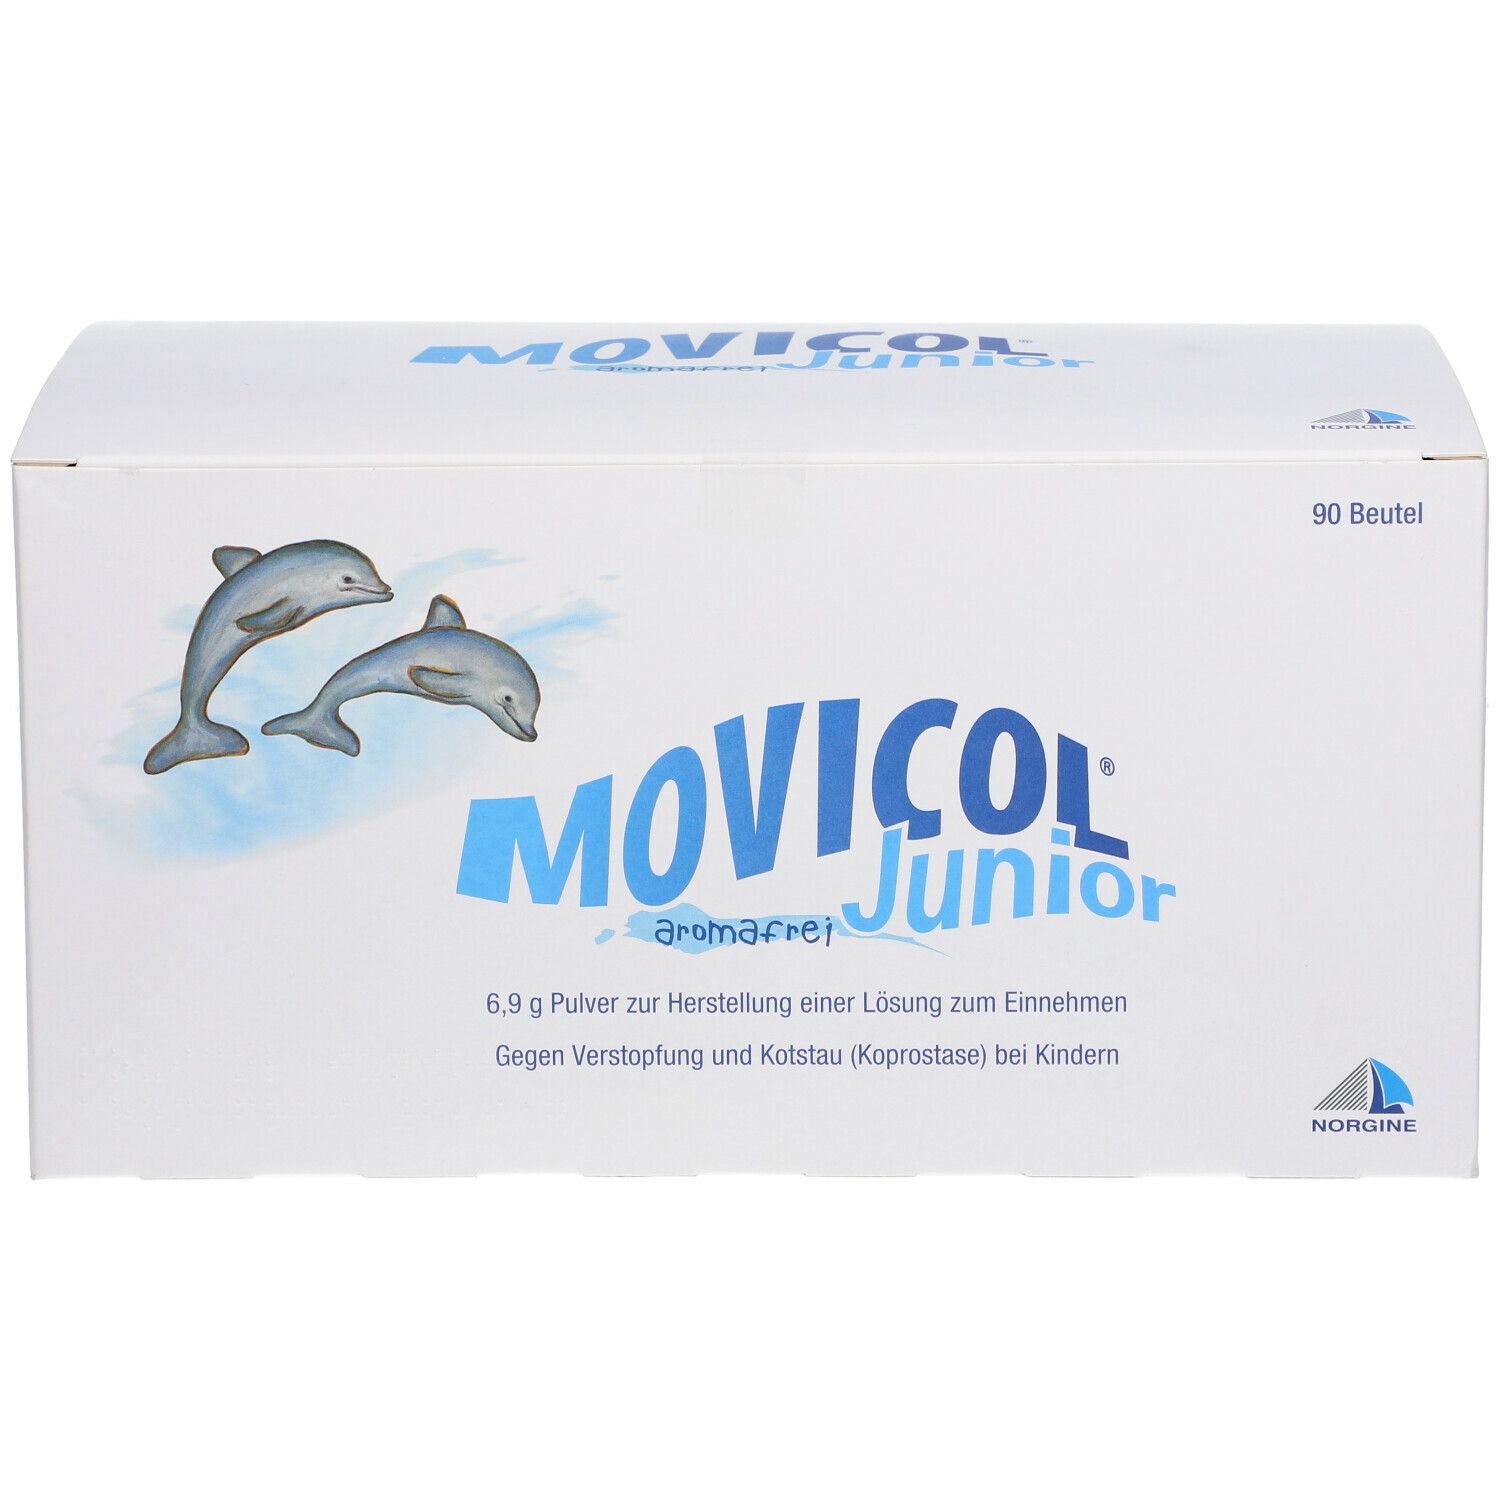 MOVICOL® Junior aromafrei